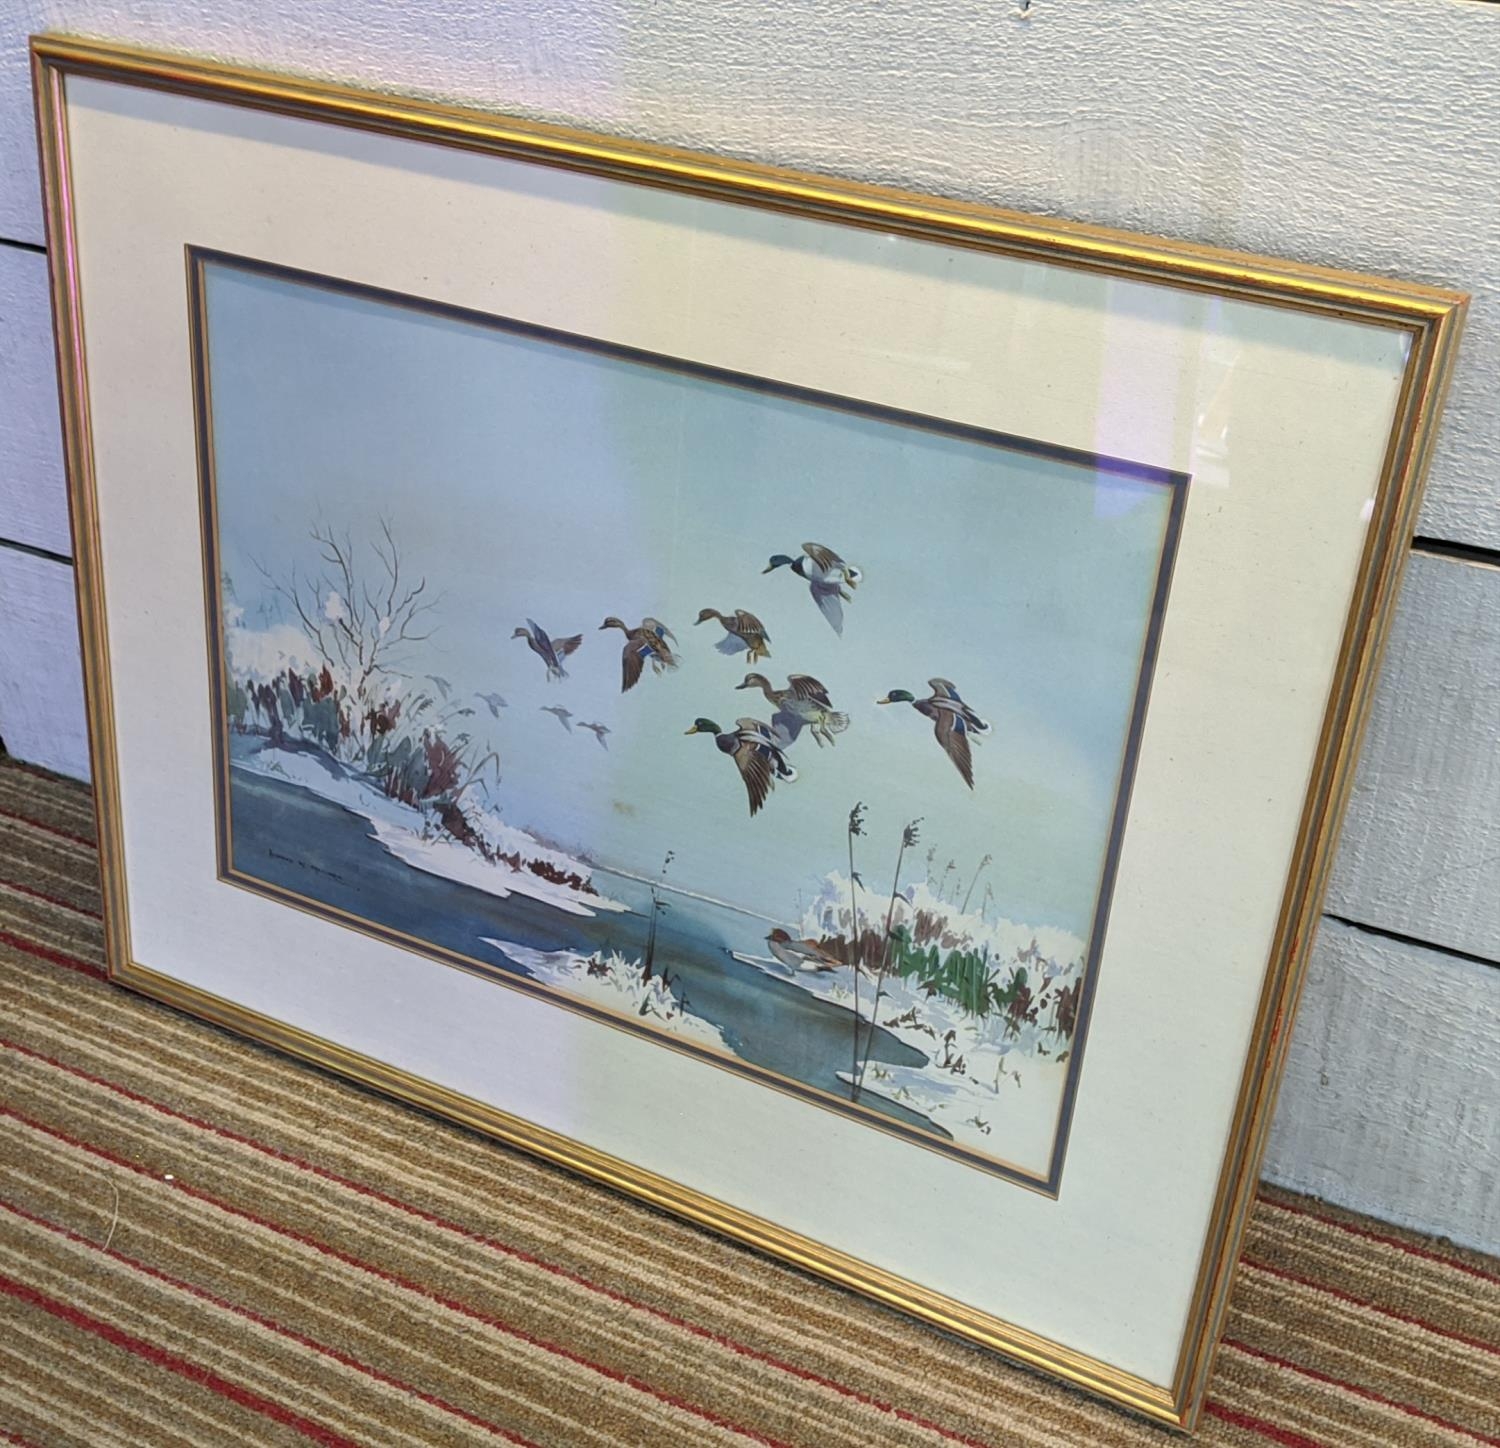 ROBERT MILLIKEN (British 1920-2014), 'Ducks over a lake', watercolour, 36cm x 50cm, framed. - Image 2 of 5